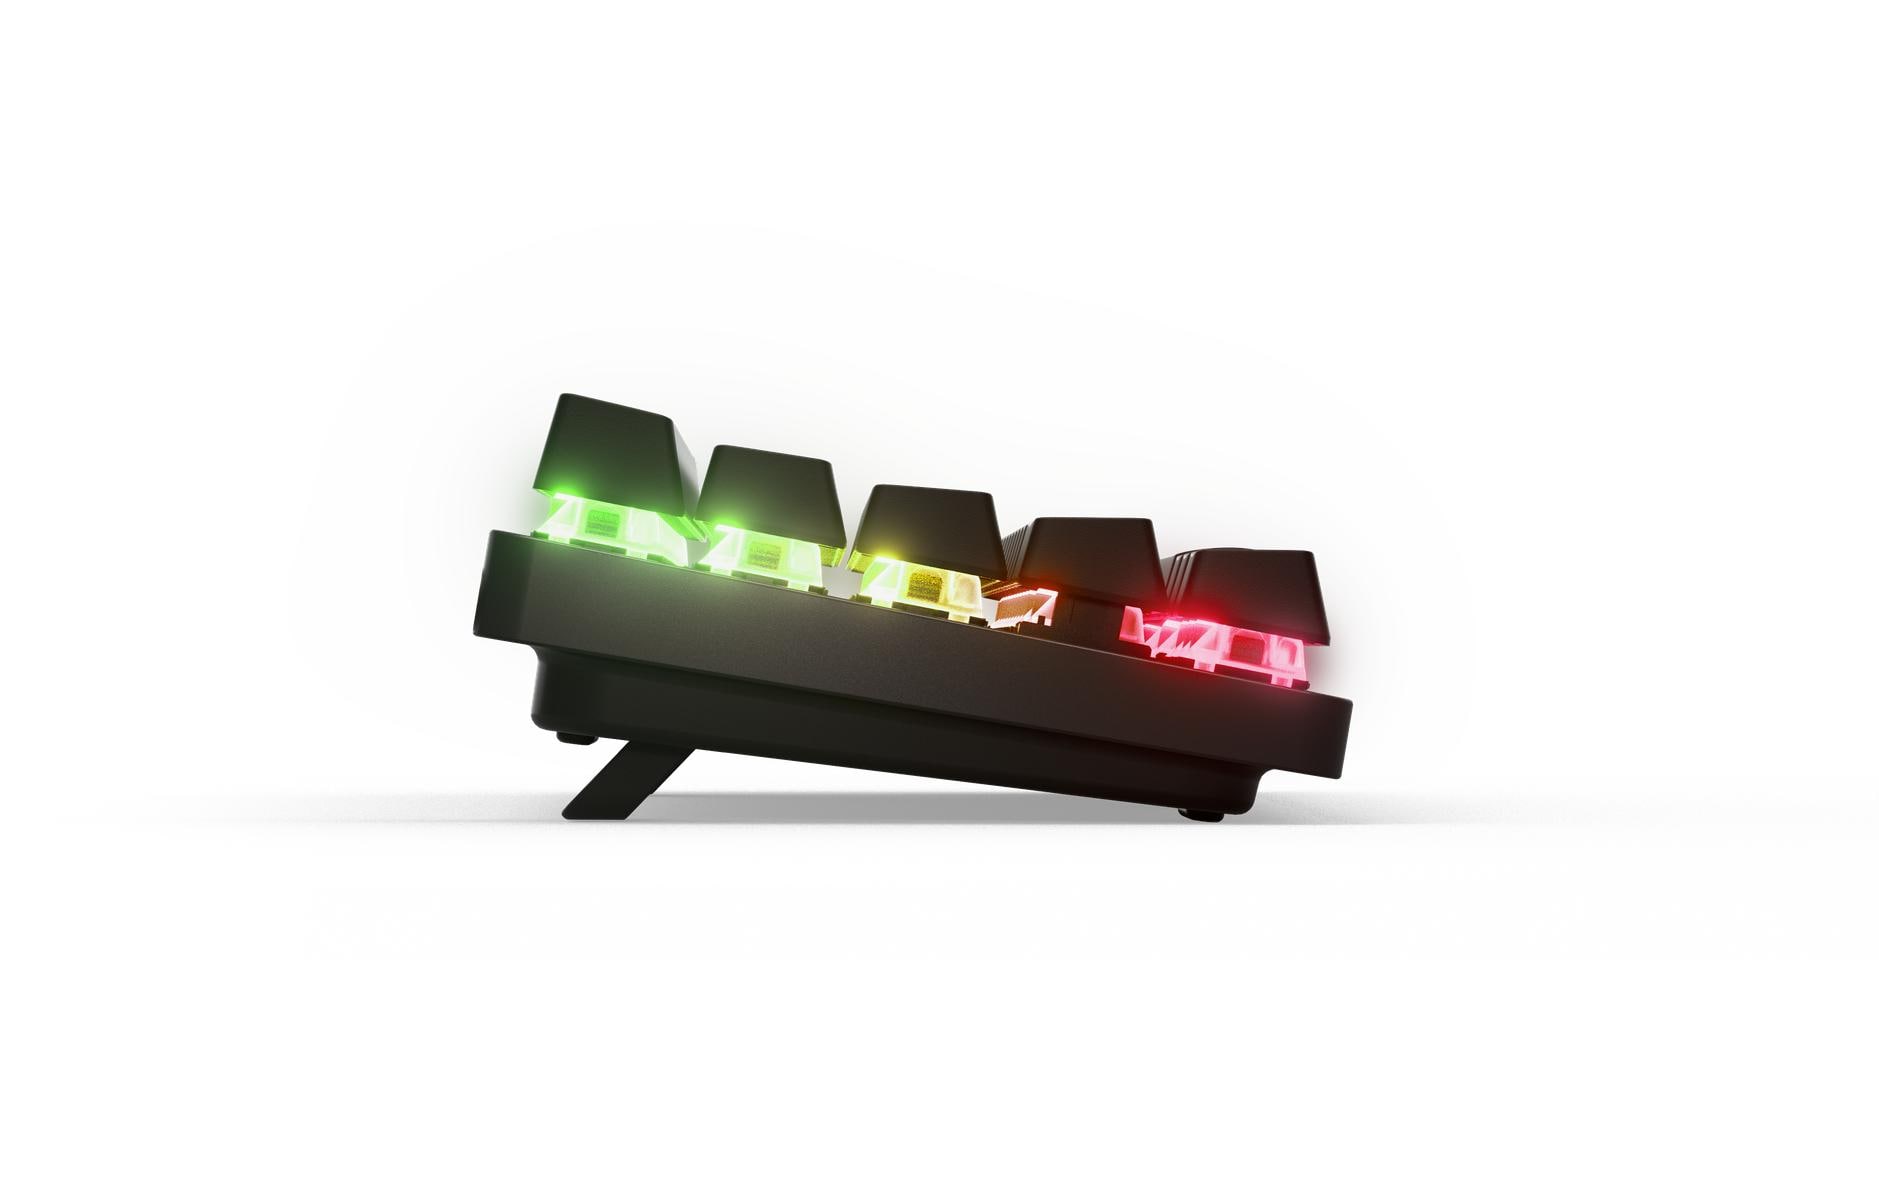 Steel Series Gaming-Tastatur Apex Pro Mini Wireless